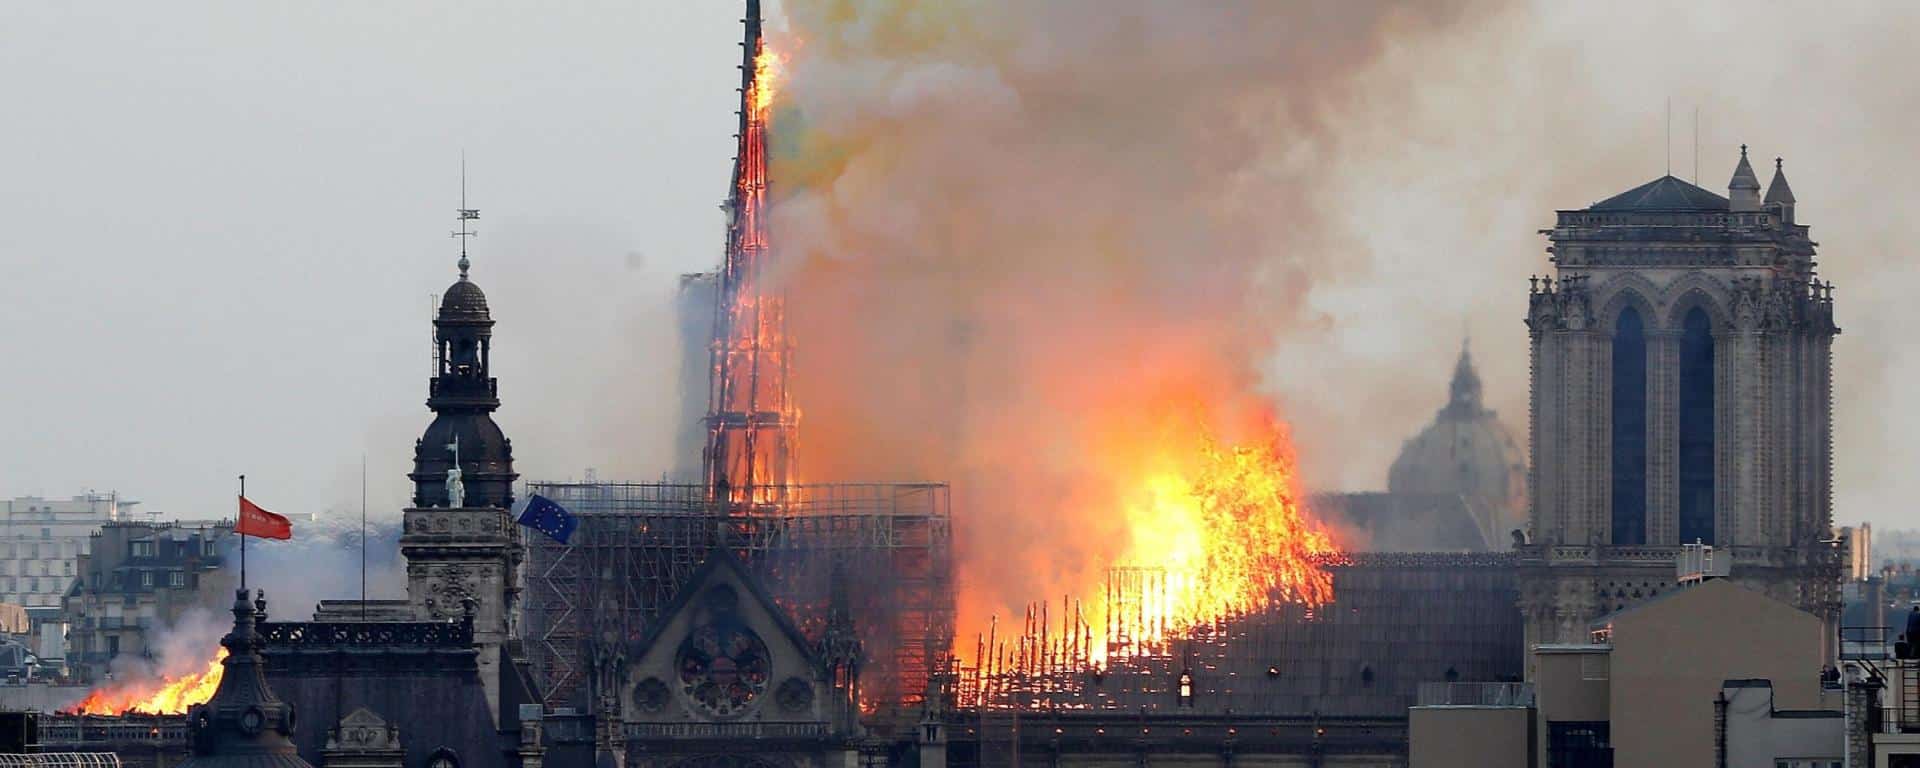 Francia: investigadores descartan la posibilidad de crimen en el incendio de Notre Dame - Fuente: El Intransigente.